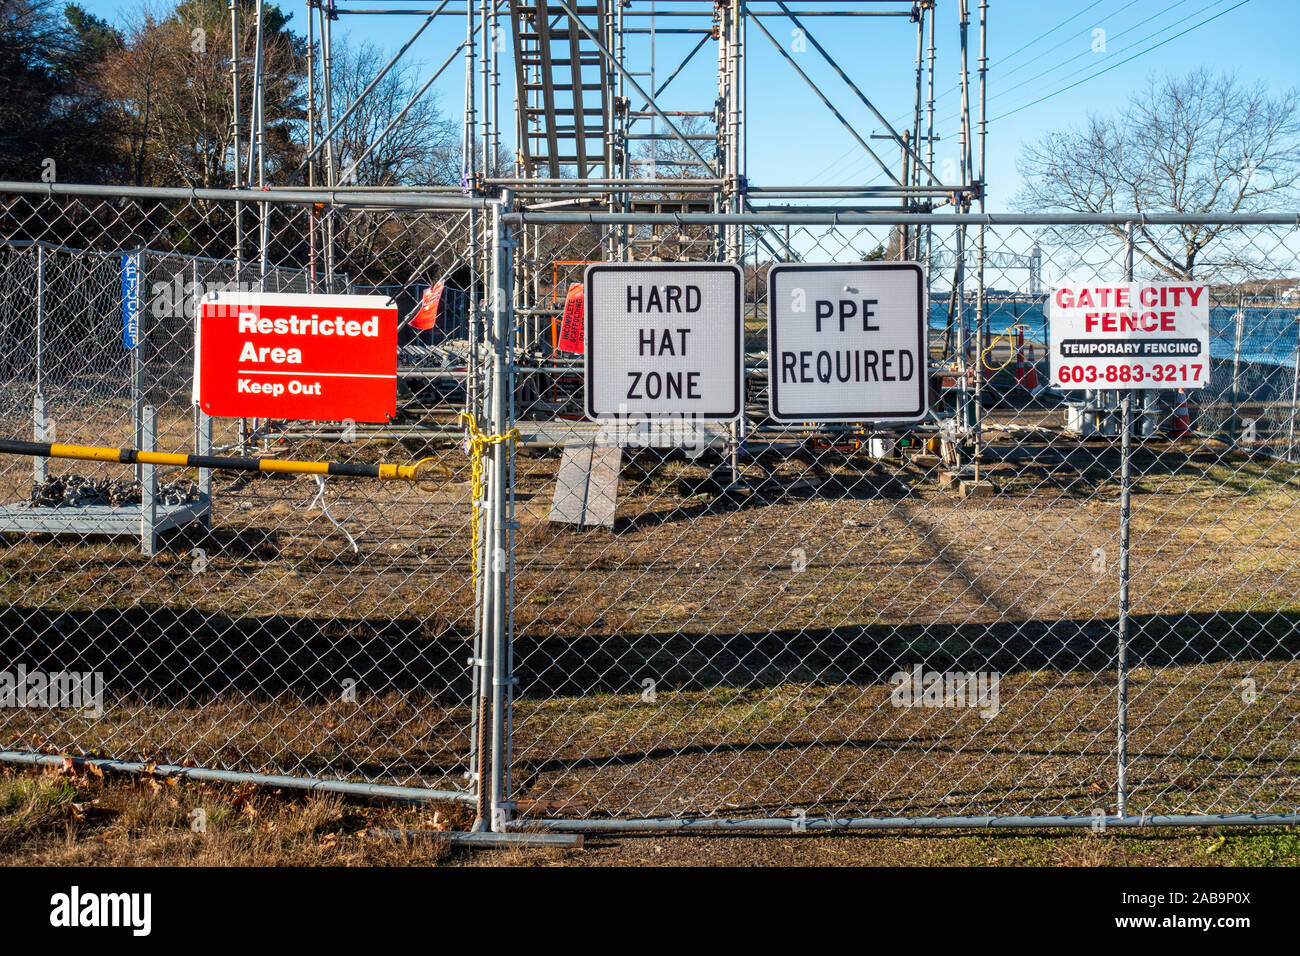 Tenir hors de zone réglementée, Casque, EPI affiches obligatoires sur grillage at construction site par Gate City Fence clôtures temporaires Banque D'Images